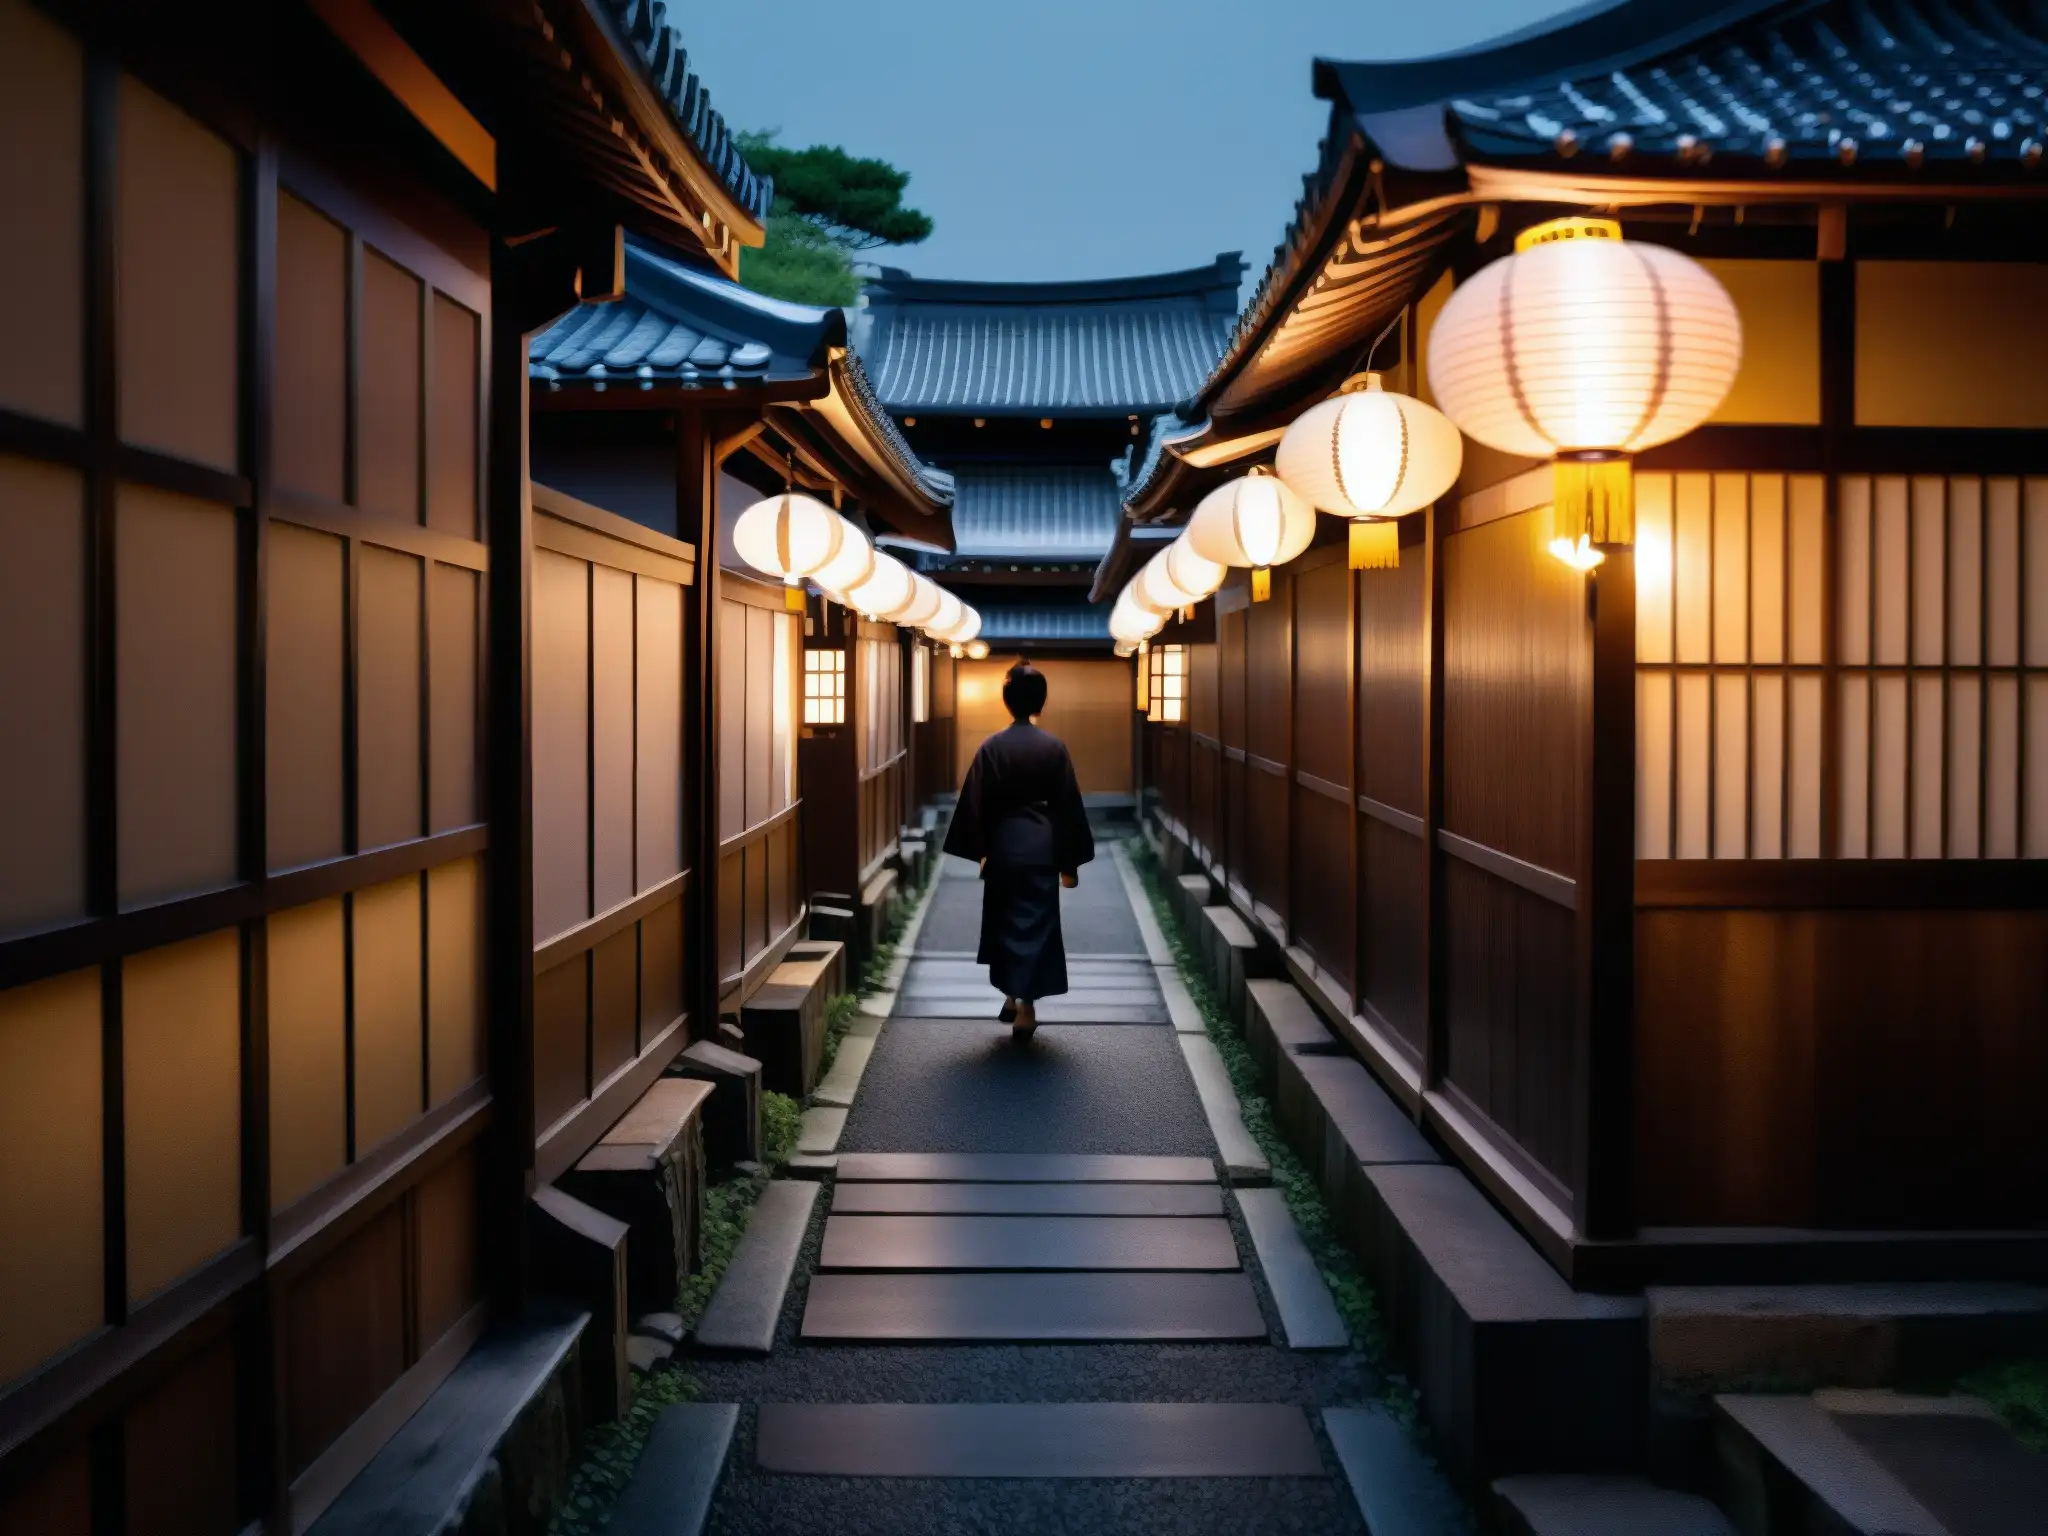 Un callejón japonés tradicional iluminado por faroles de papel